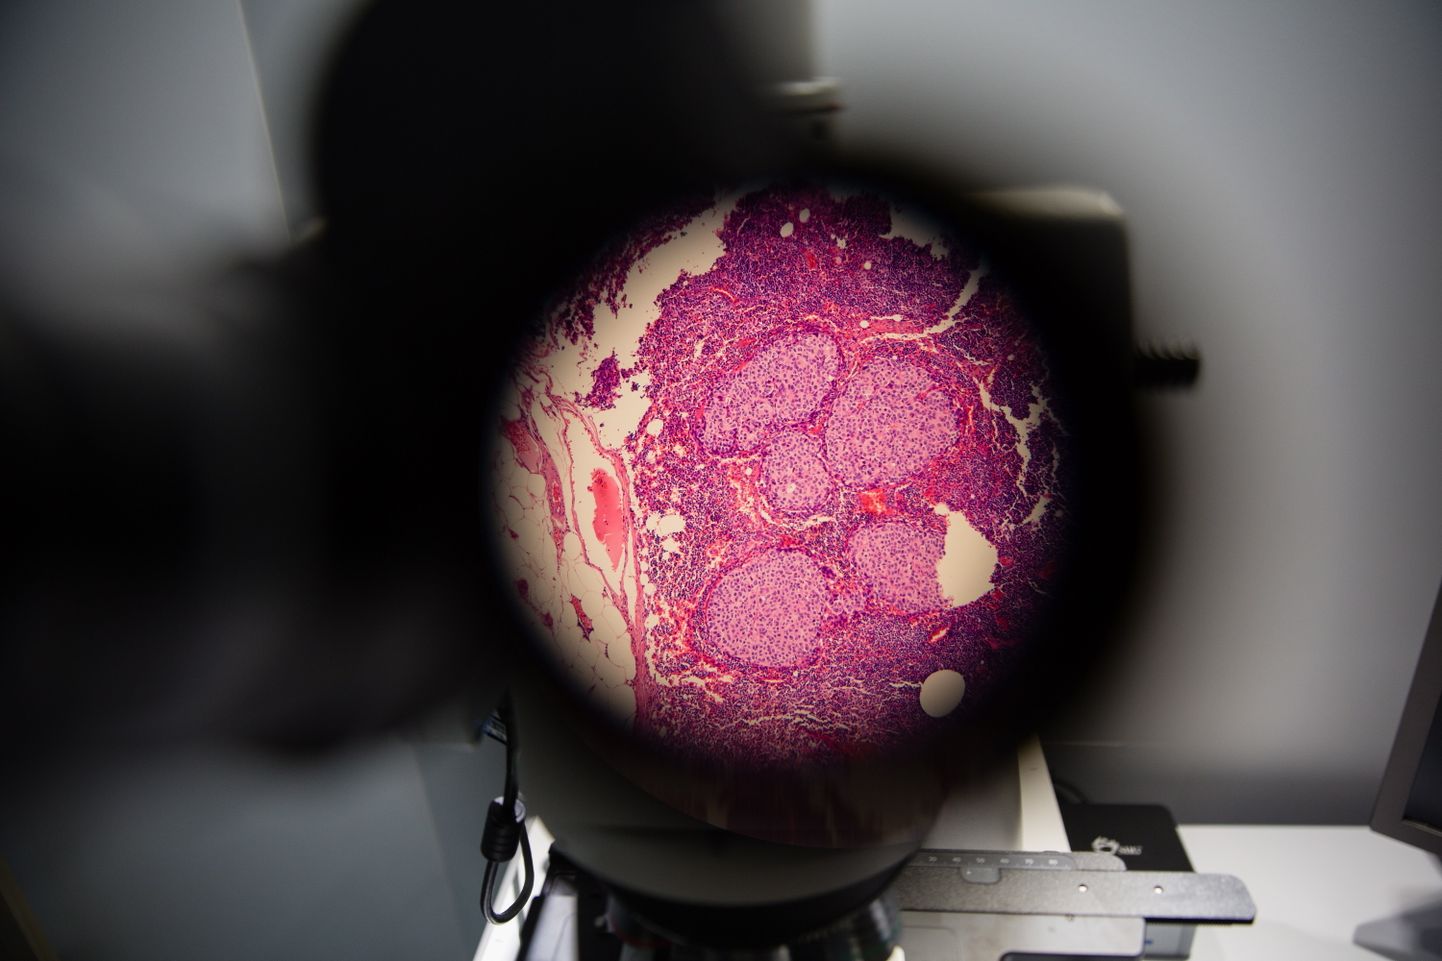 Клетки рака под микроскопом. Иллюстративное фото.